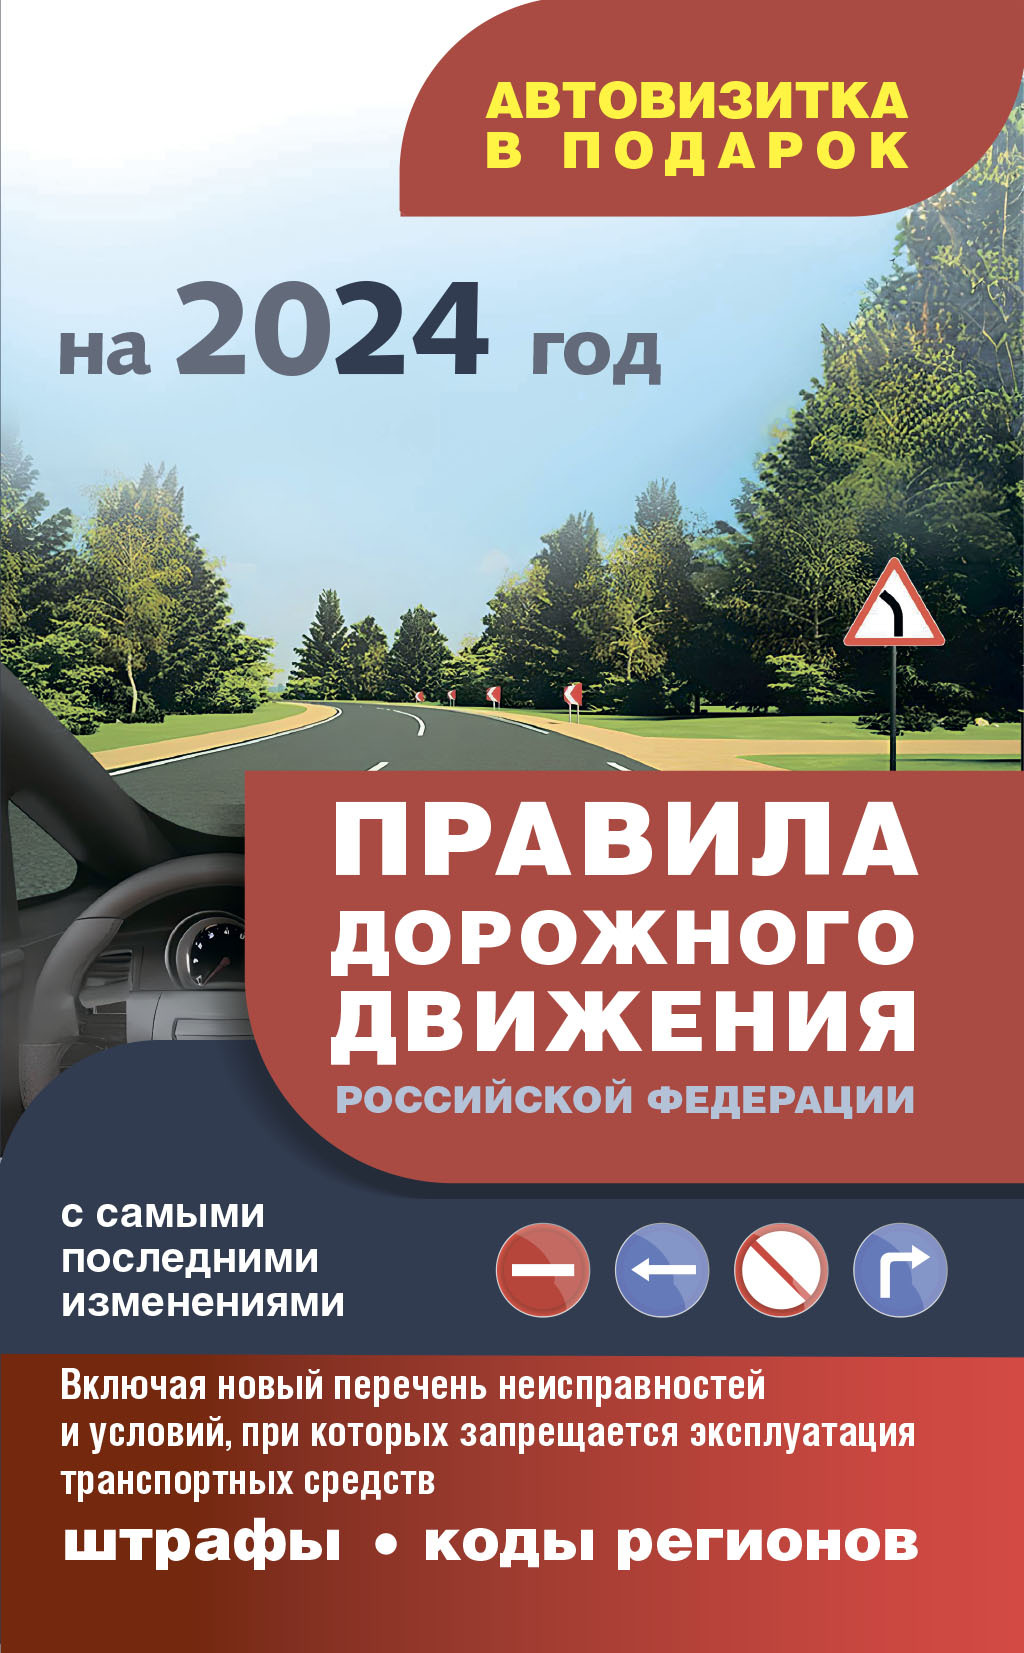 Правила дорожного движения 2019 с самыми последними дополнениями на 15 мая 2019 года: штрафы, коды регионов